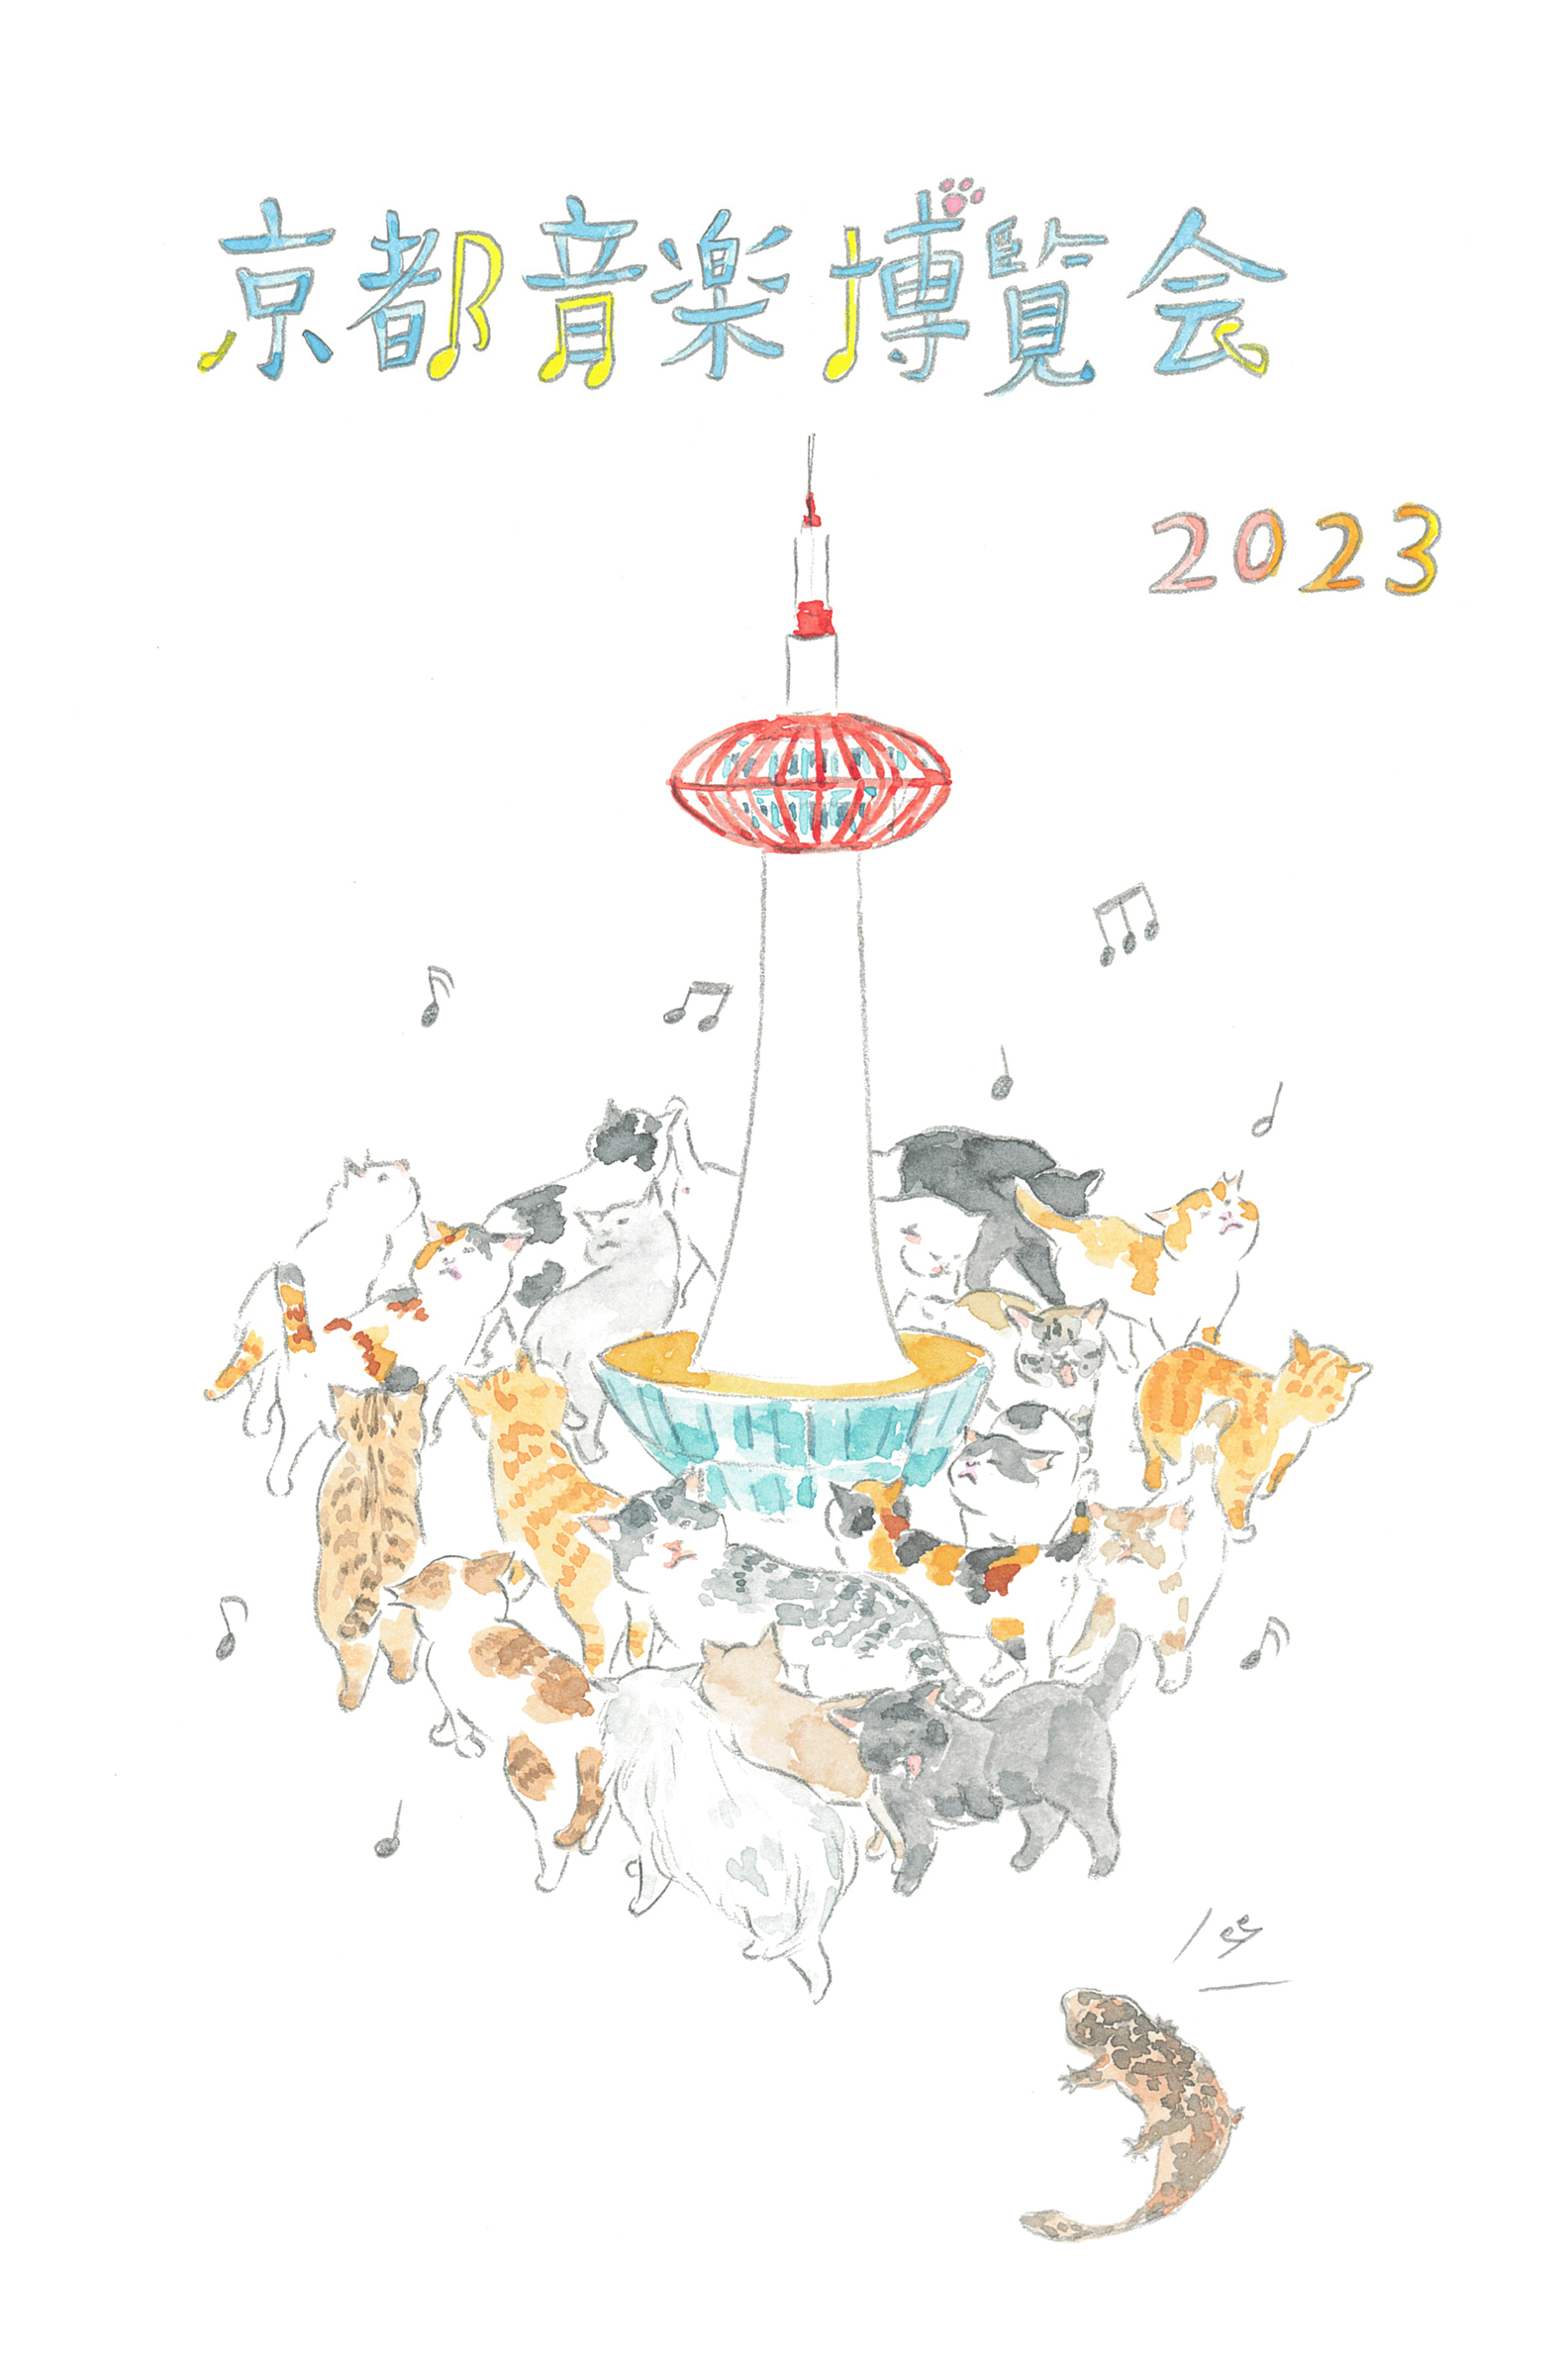 くるり主催『京都音楽博覧会2023』タイムテーブルとエリアマップが解禁